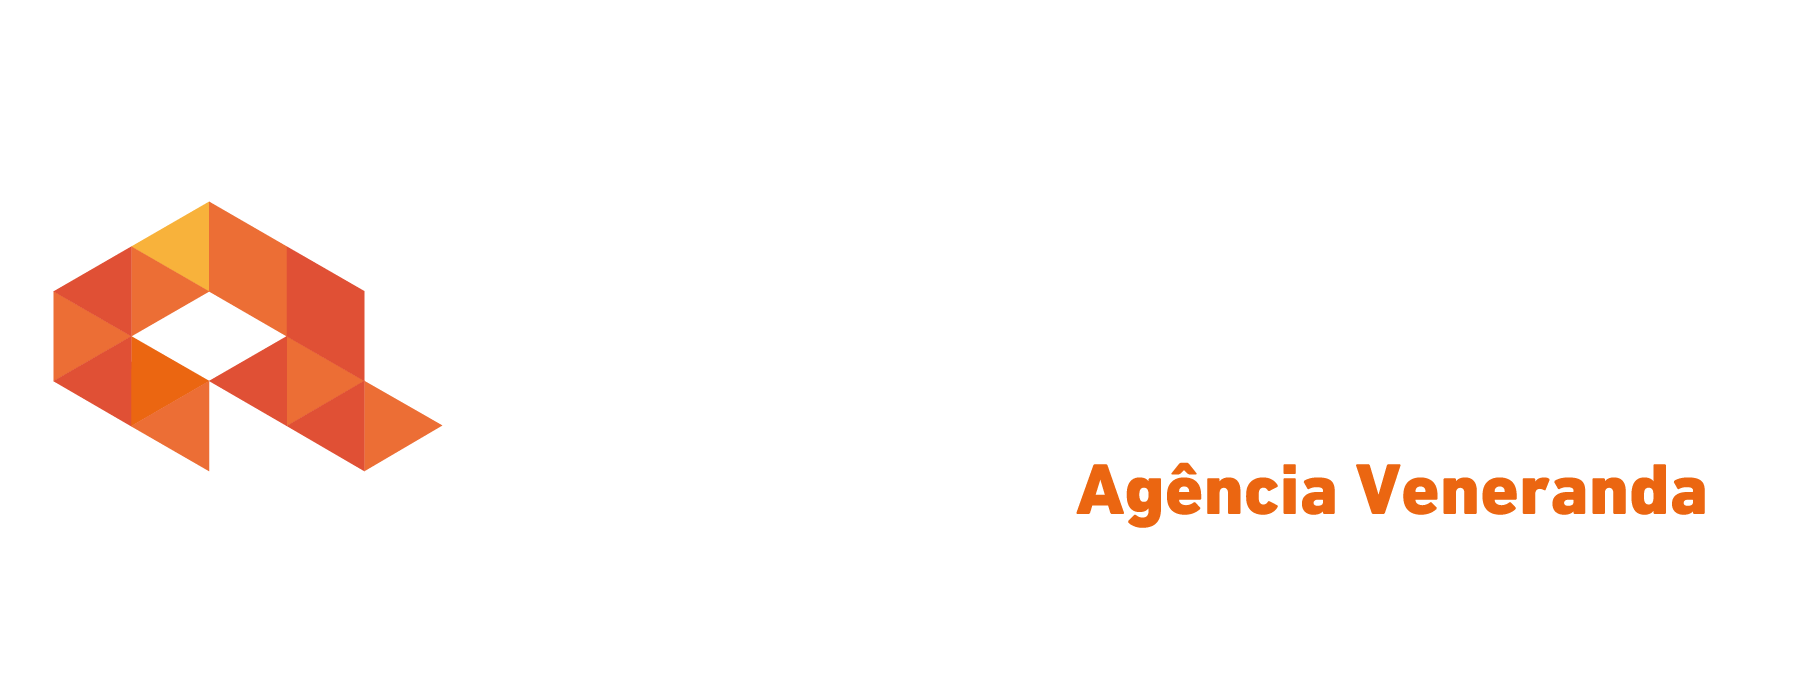 Logo crédito real Crédito Real Veneranda